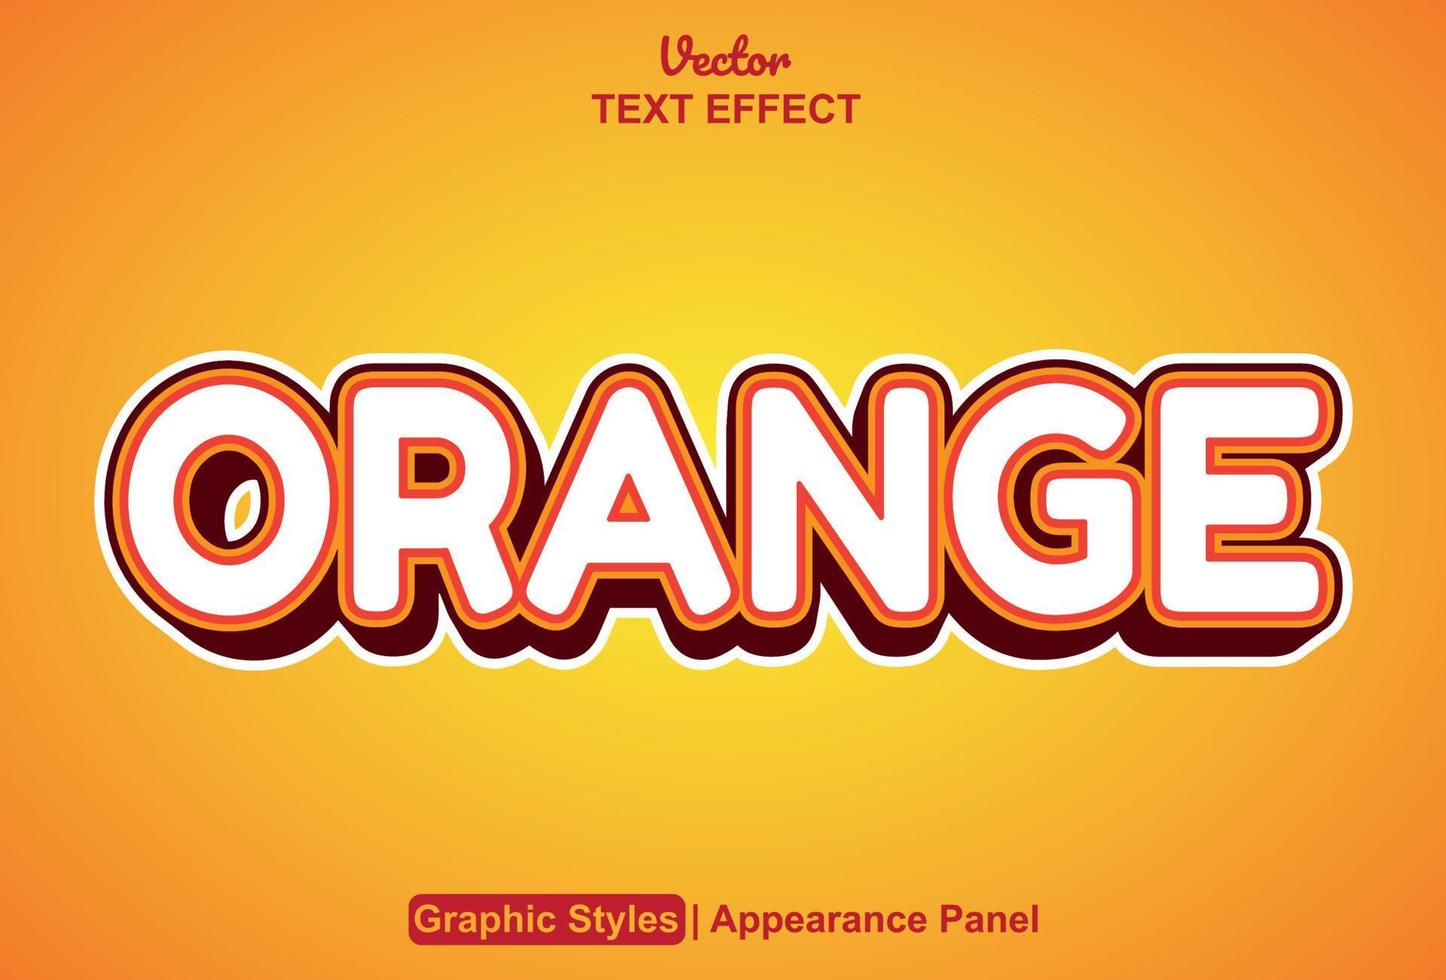 efecto de texto naranja con estilo gráfico y editable. vector